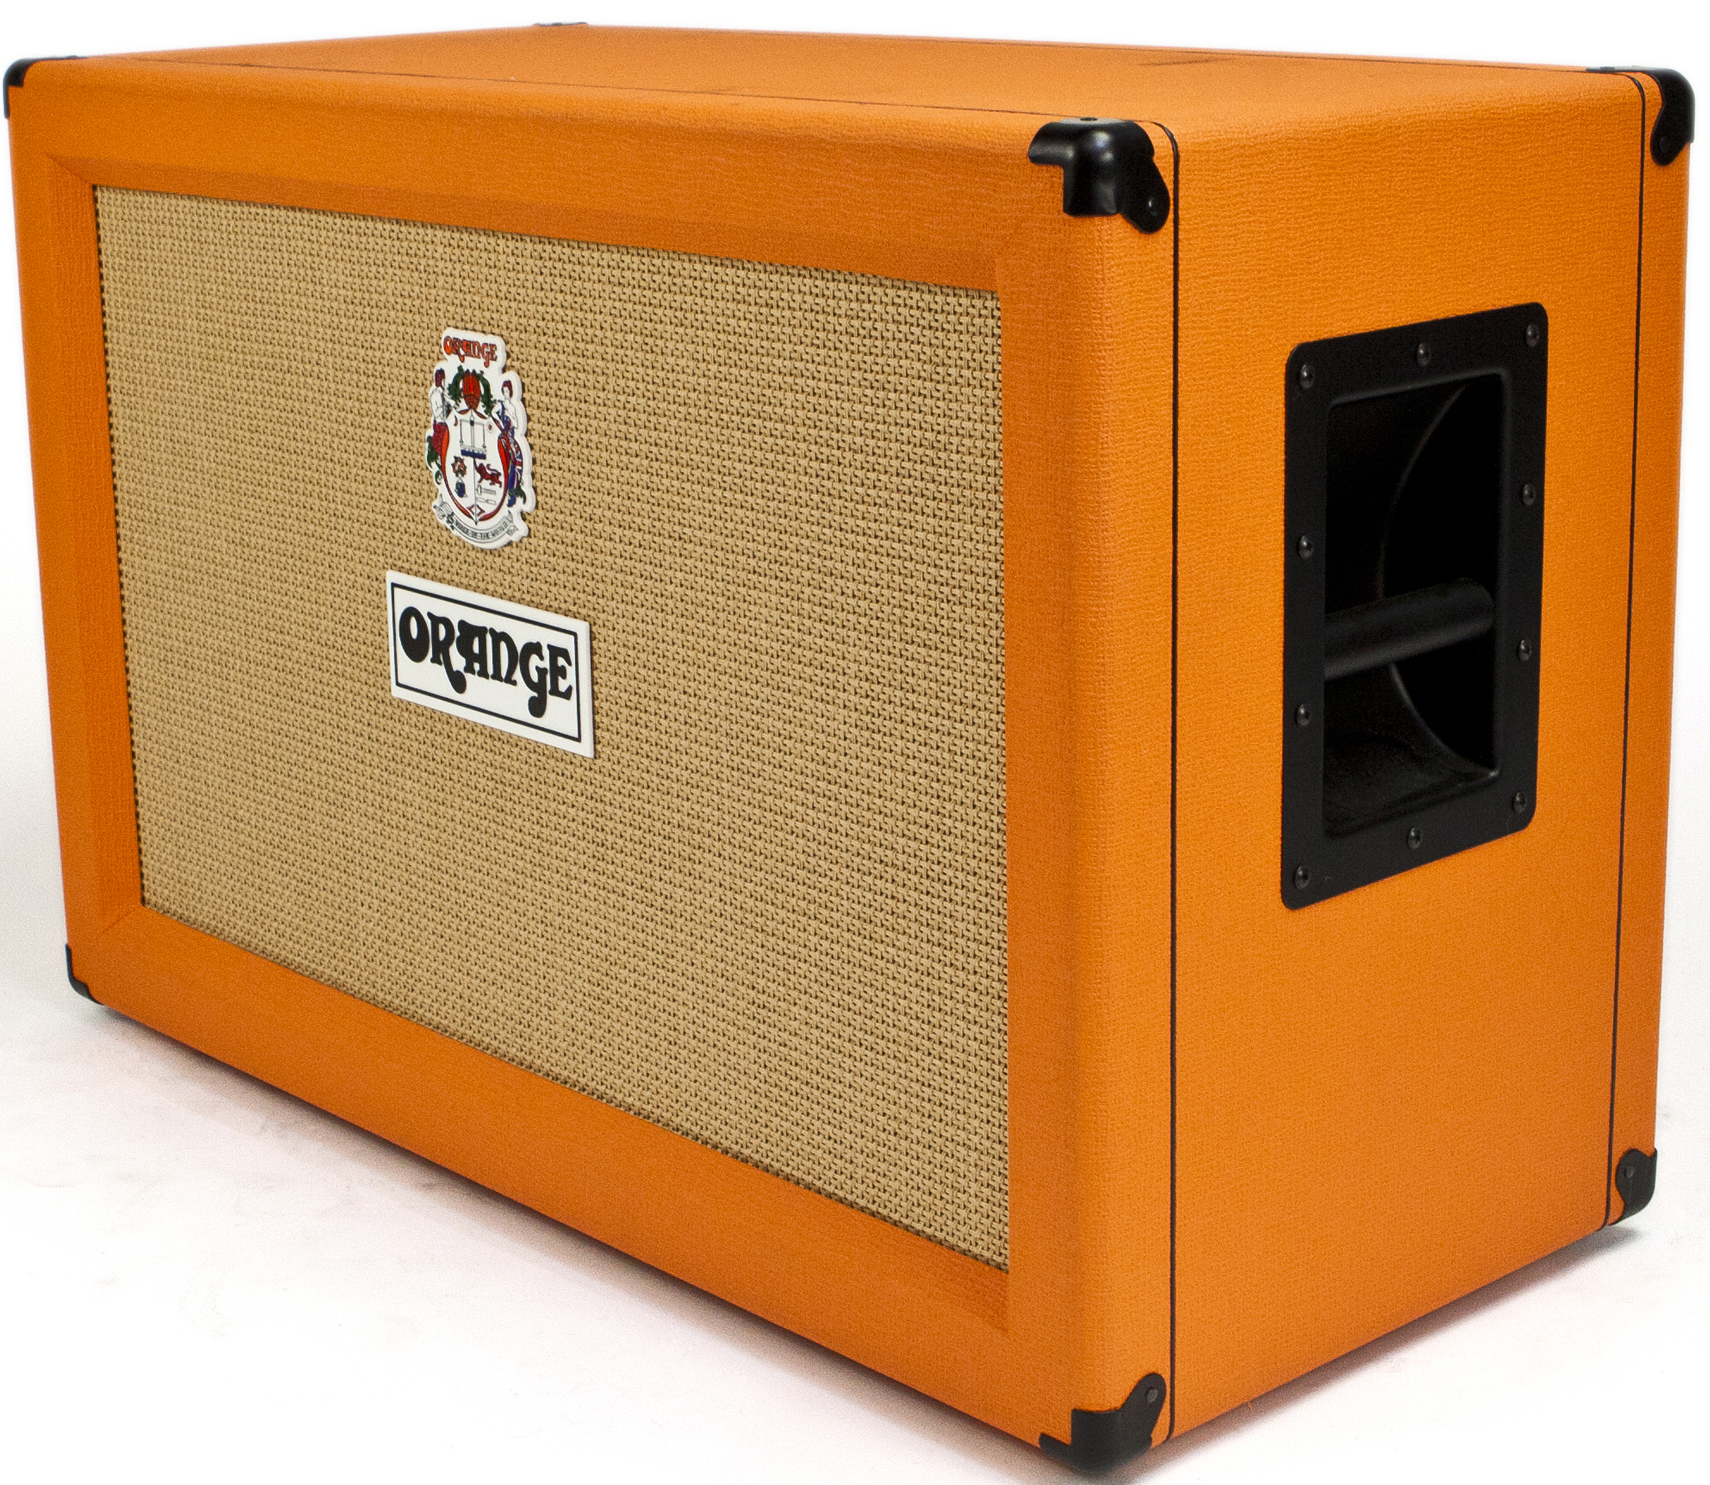 Orange PPC212 Gitarrenbox orange